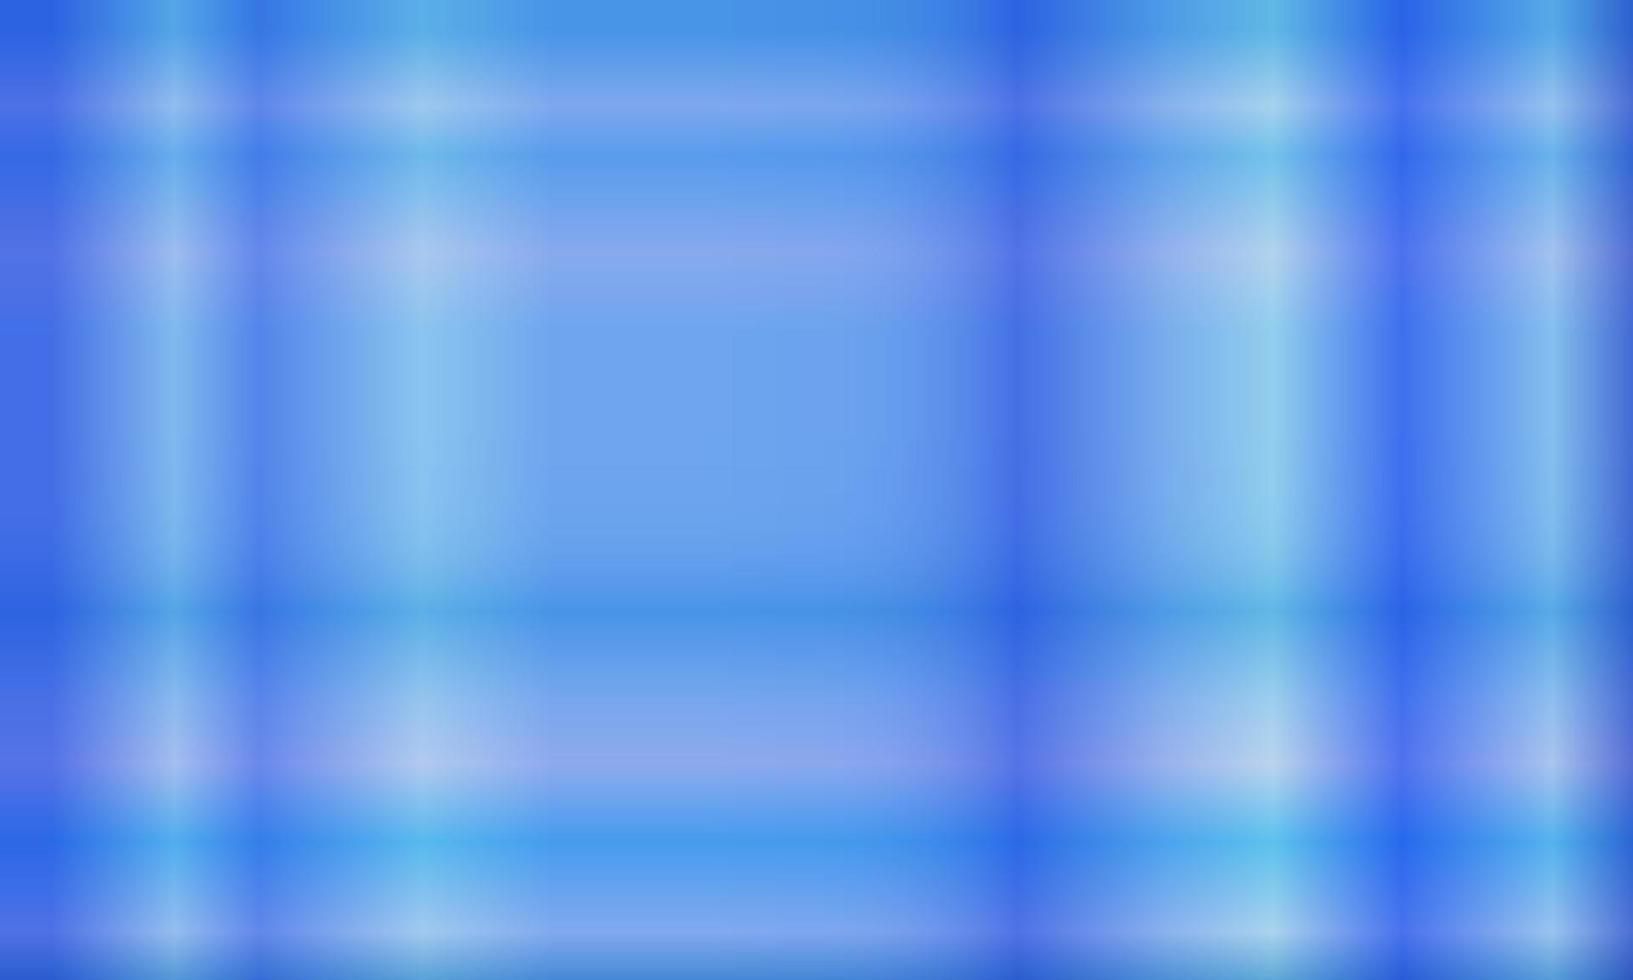 pastellblauer abstrakter hintergrund mit hellen linien vertikal und horizontal. Muster, Farbverlauf, Unschärfe, moderner und farbenfroher Stil. Verwendung für Hintergrund, Hintergrund, Hintergrundbild, Banner oder Flyer vektor